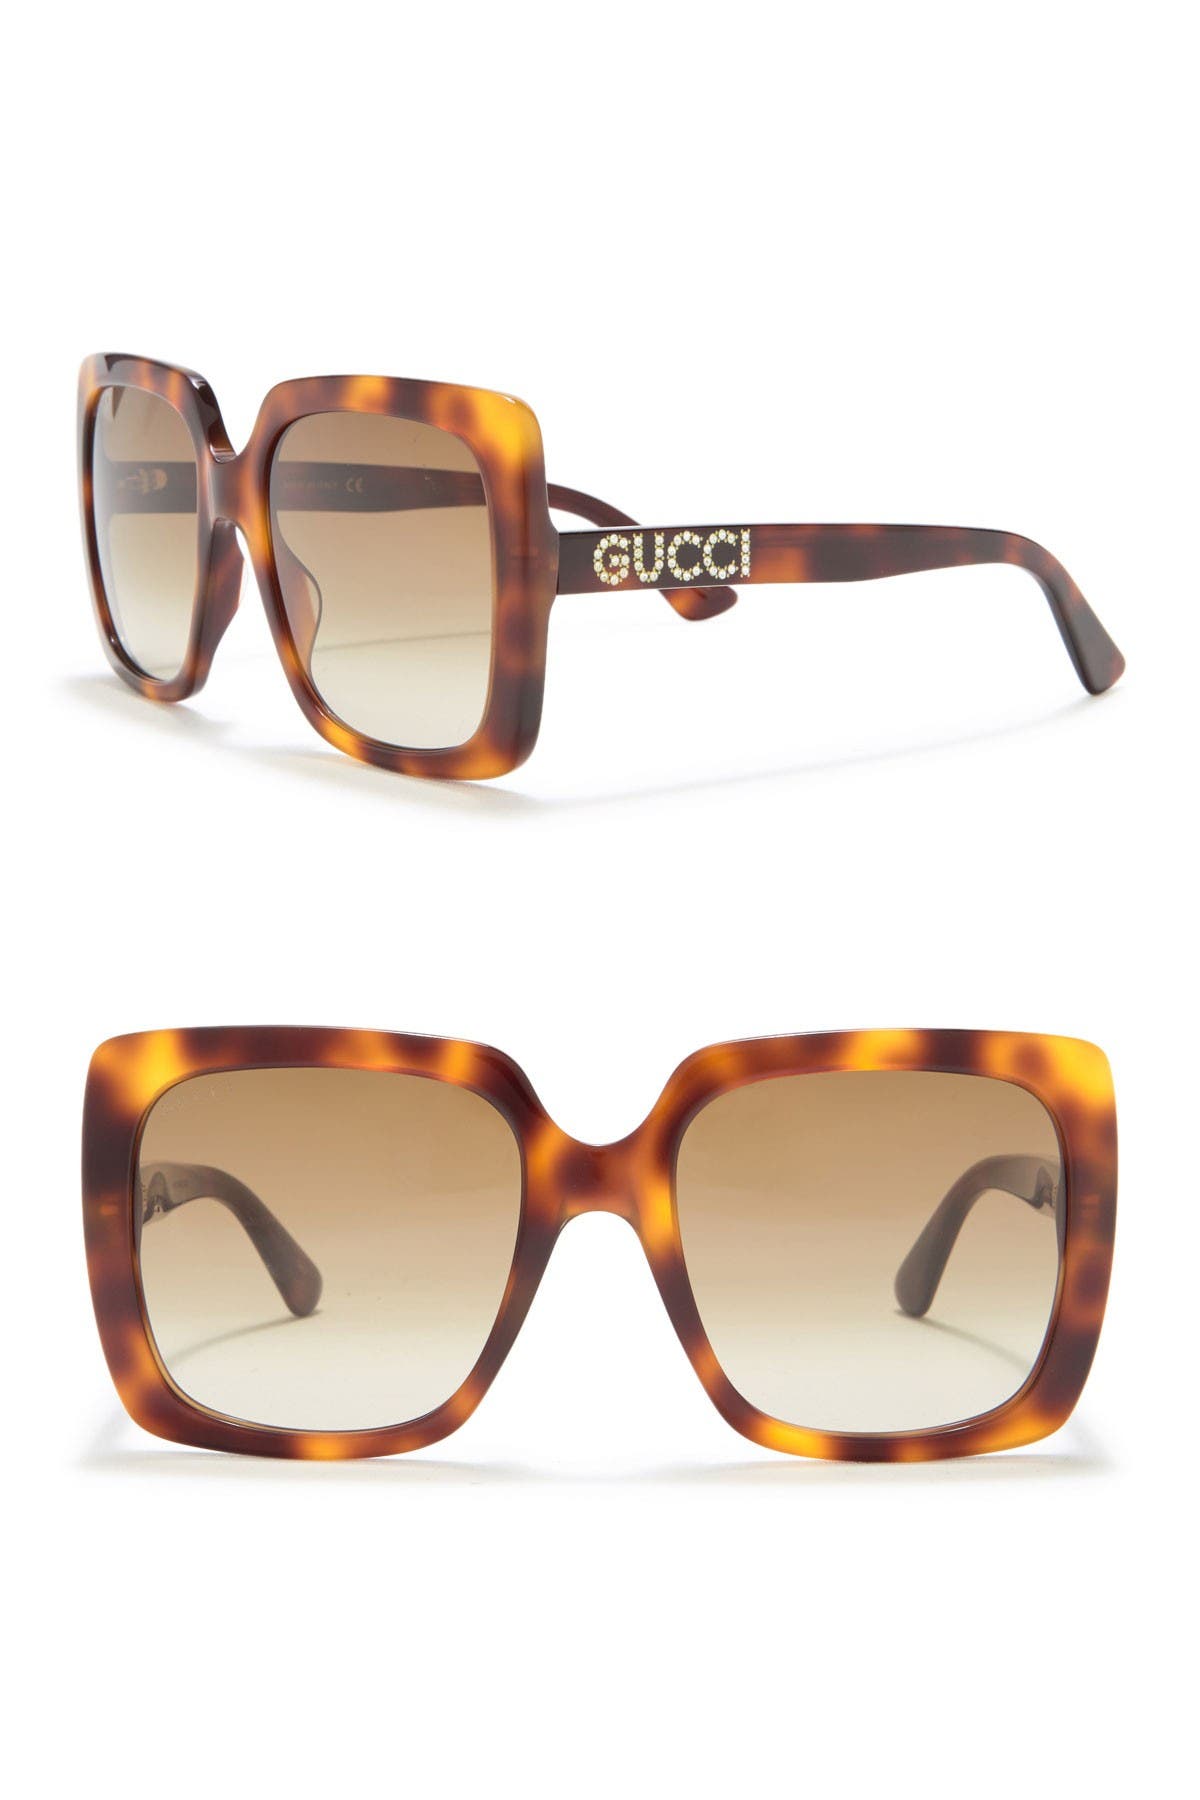 gucci women's oversized square sunglasses 54mm